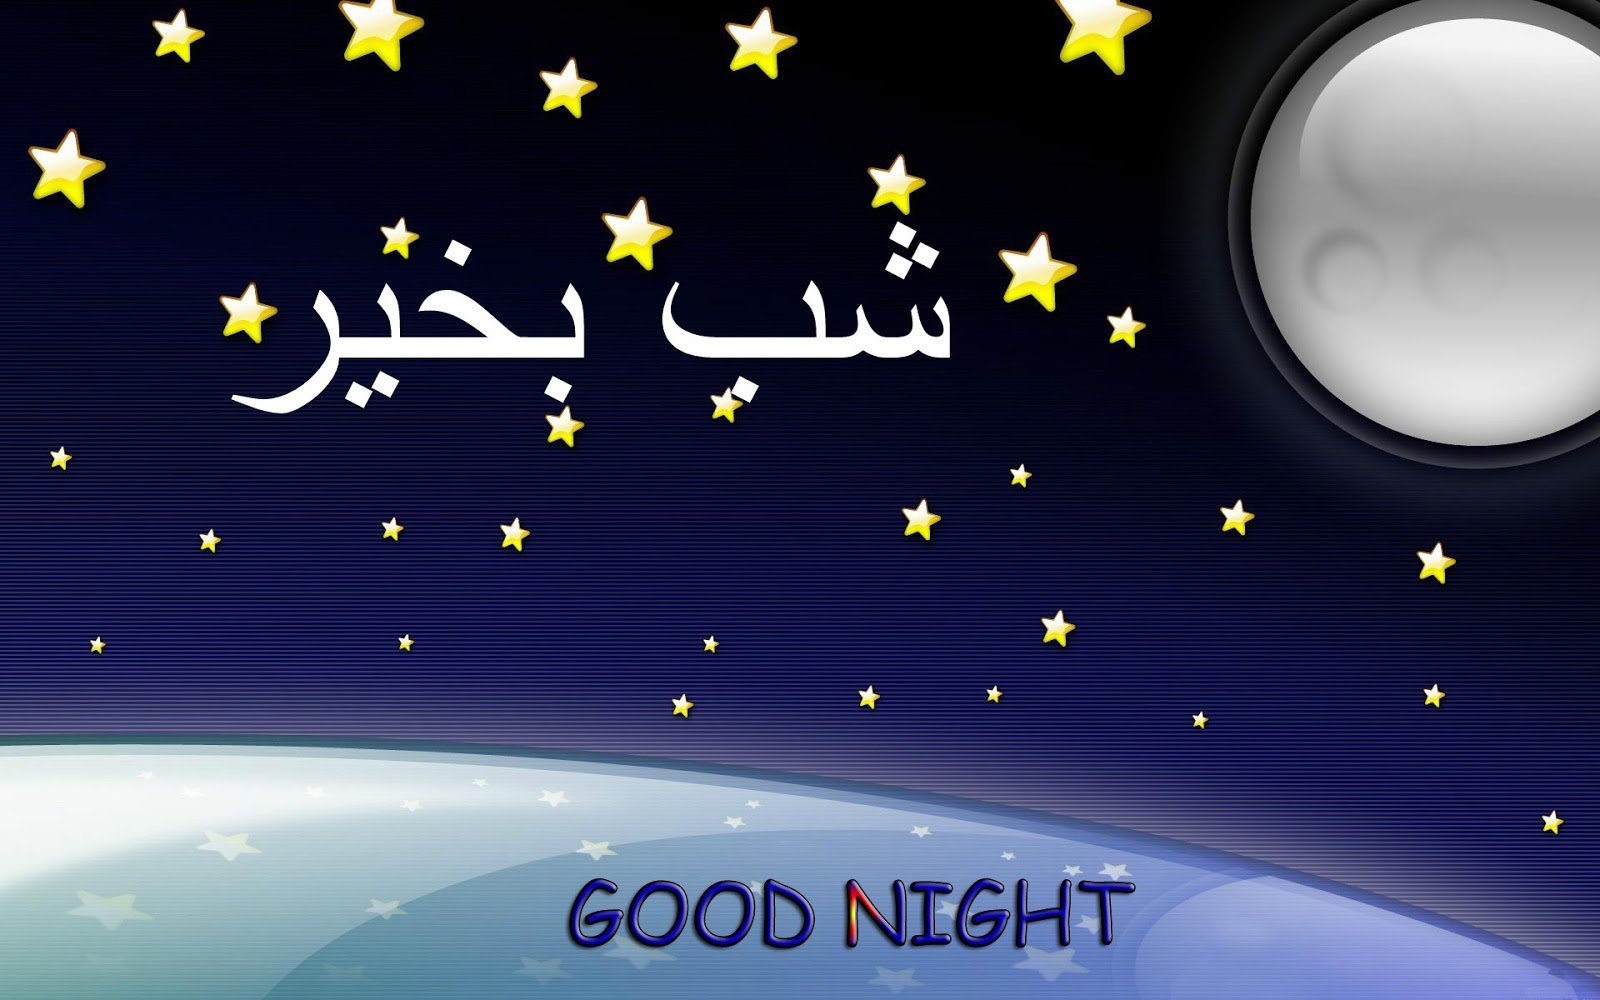 Спокойной на таджикском. Спокойной ночи на арабском. Спокойной ночи на арабском мужчине. Пожелание спокойной ночи на арабском. Пожелать спокойной ночи на арабском языке.